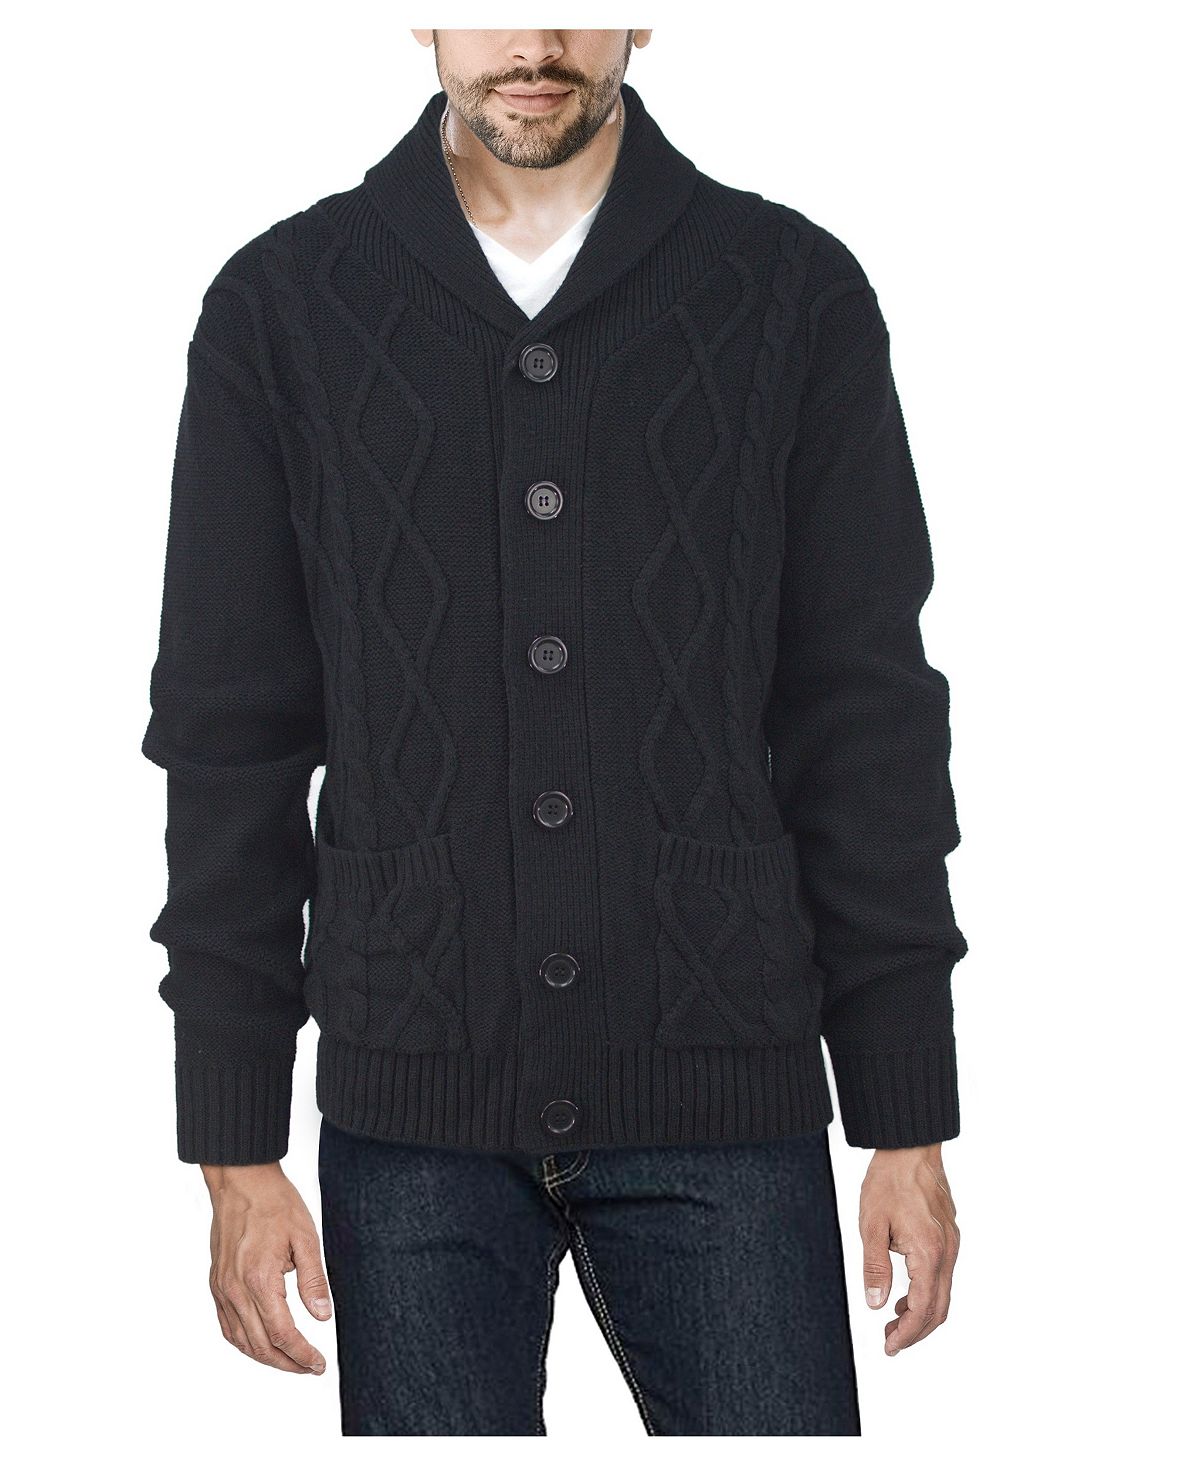 Мужской кардиган косой вязки с шалевым воротником X-Ray мужской свитер пальто шикарный вязаный однотонный повседневный плотный зимний жакет для дома мужское пальто мужской свитер пальто